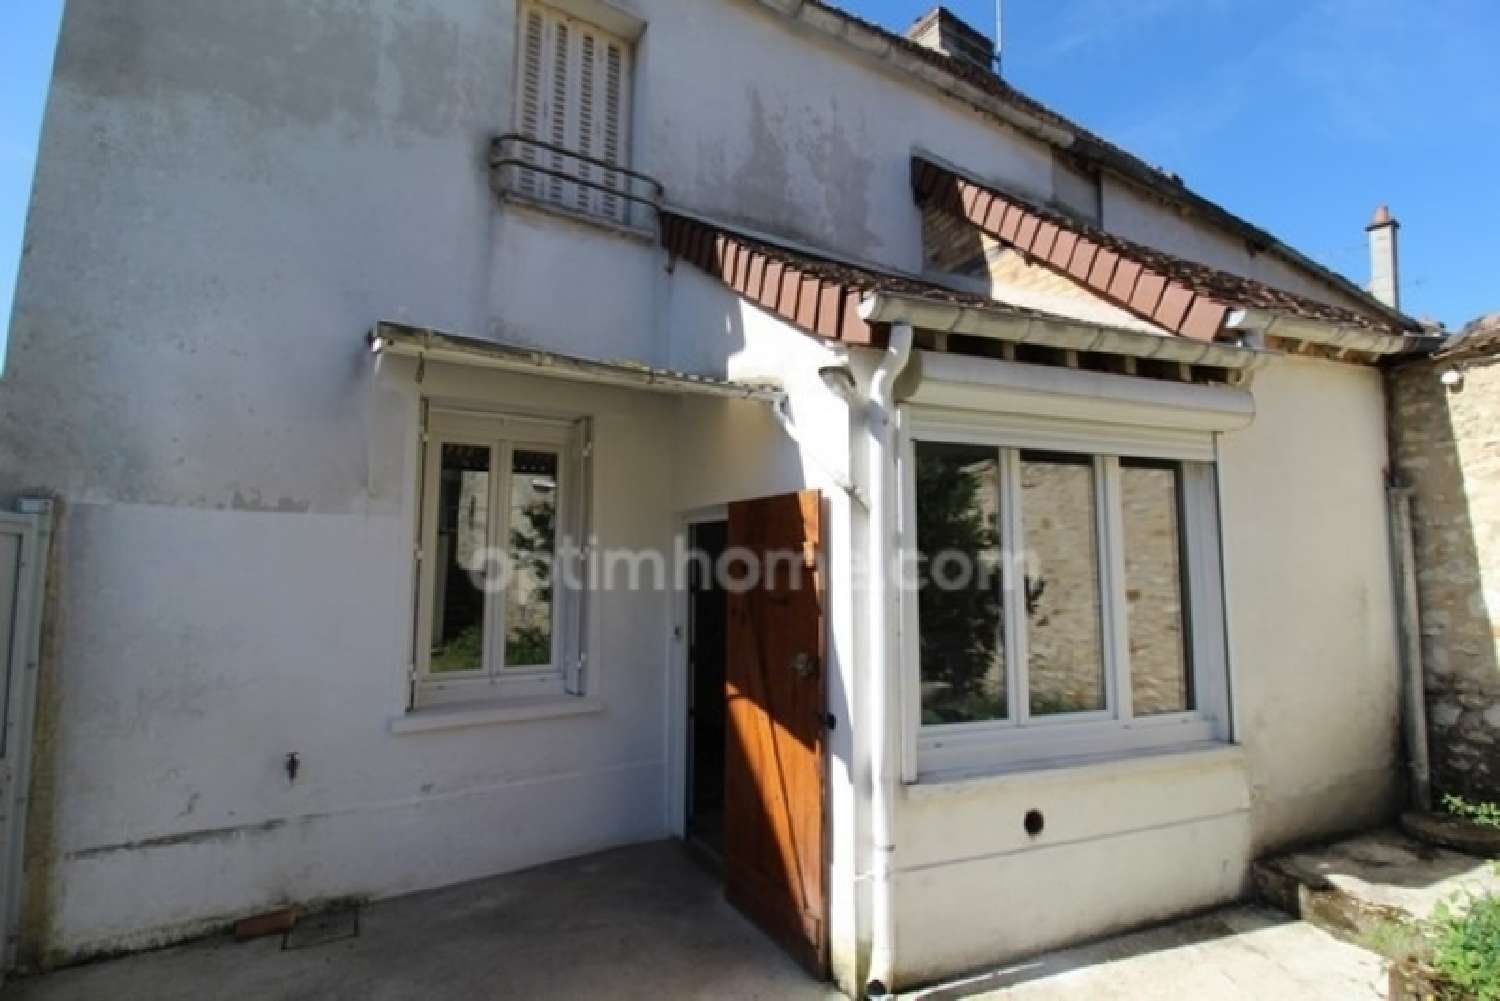  à vendre maison Paroy Seine-et-Marne 1